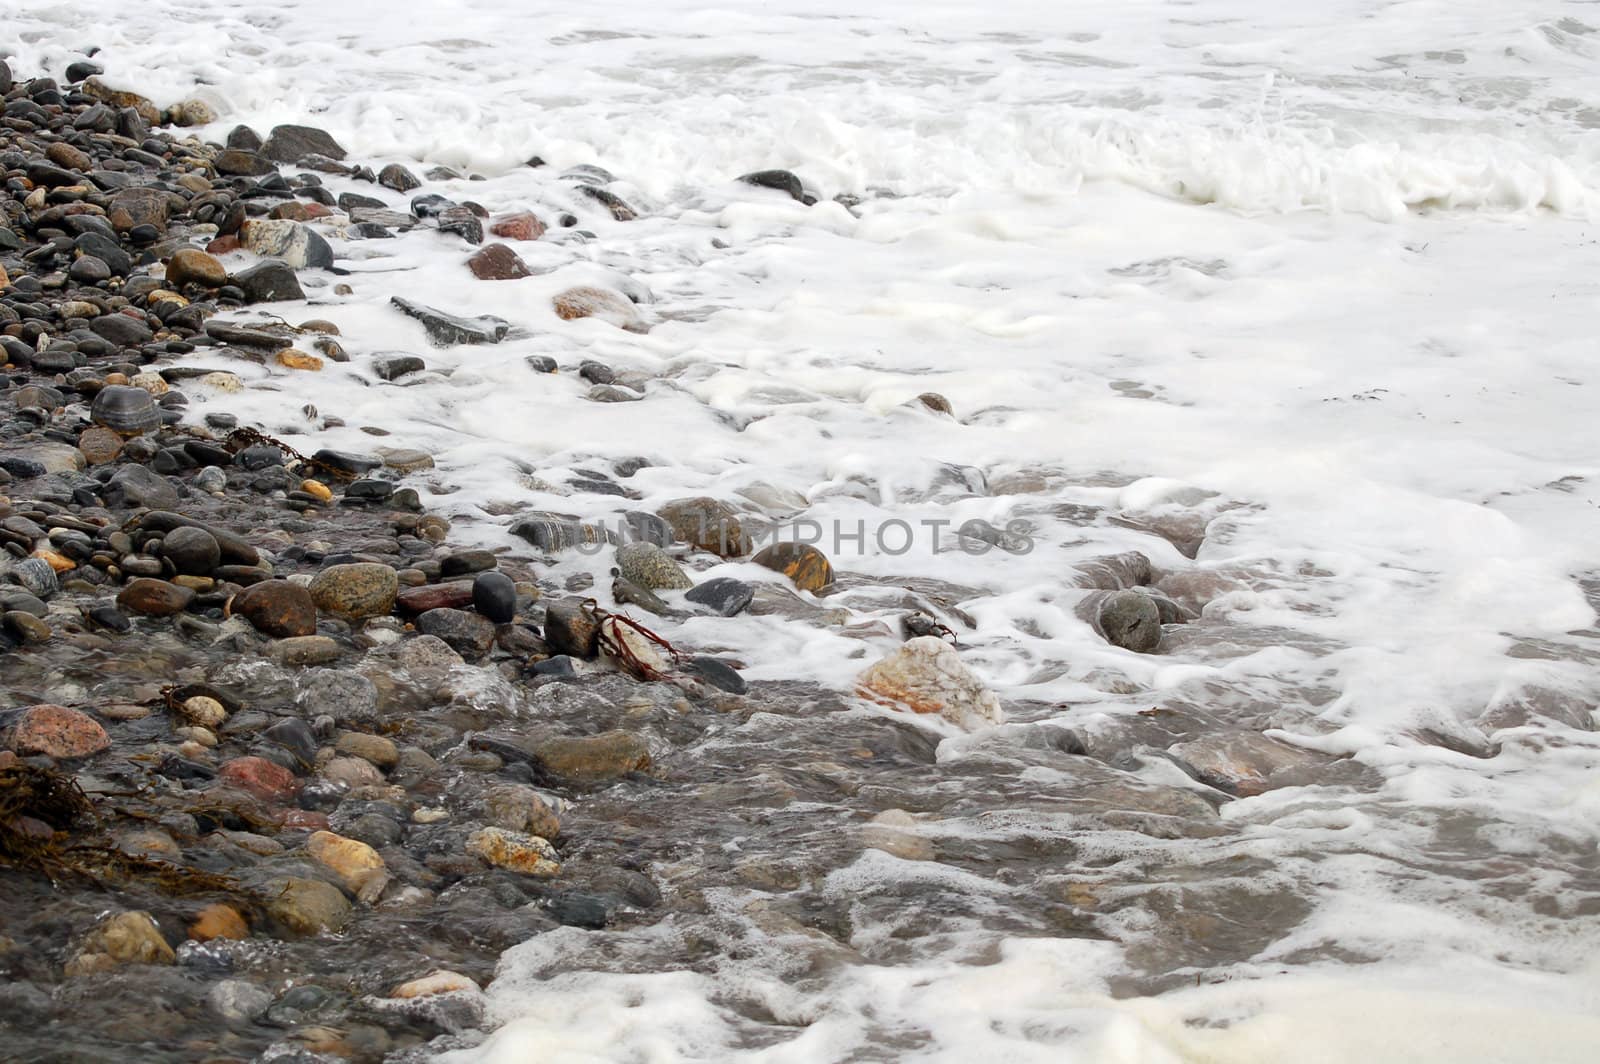 rocks in stormy water